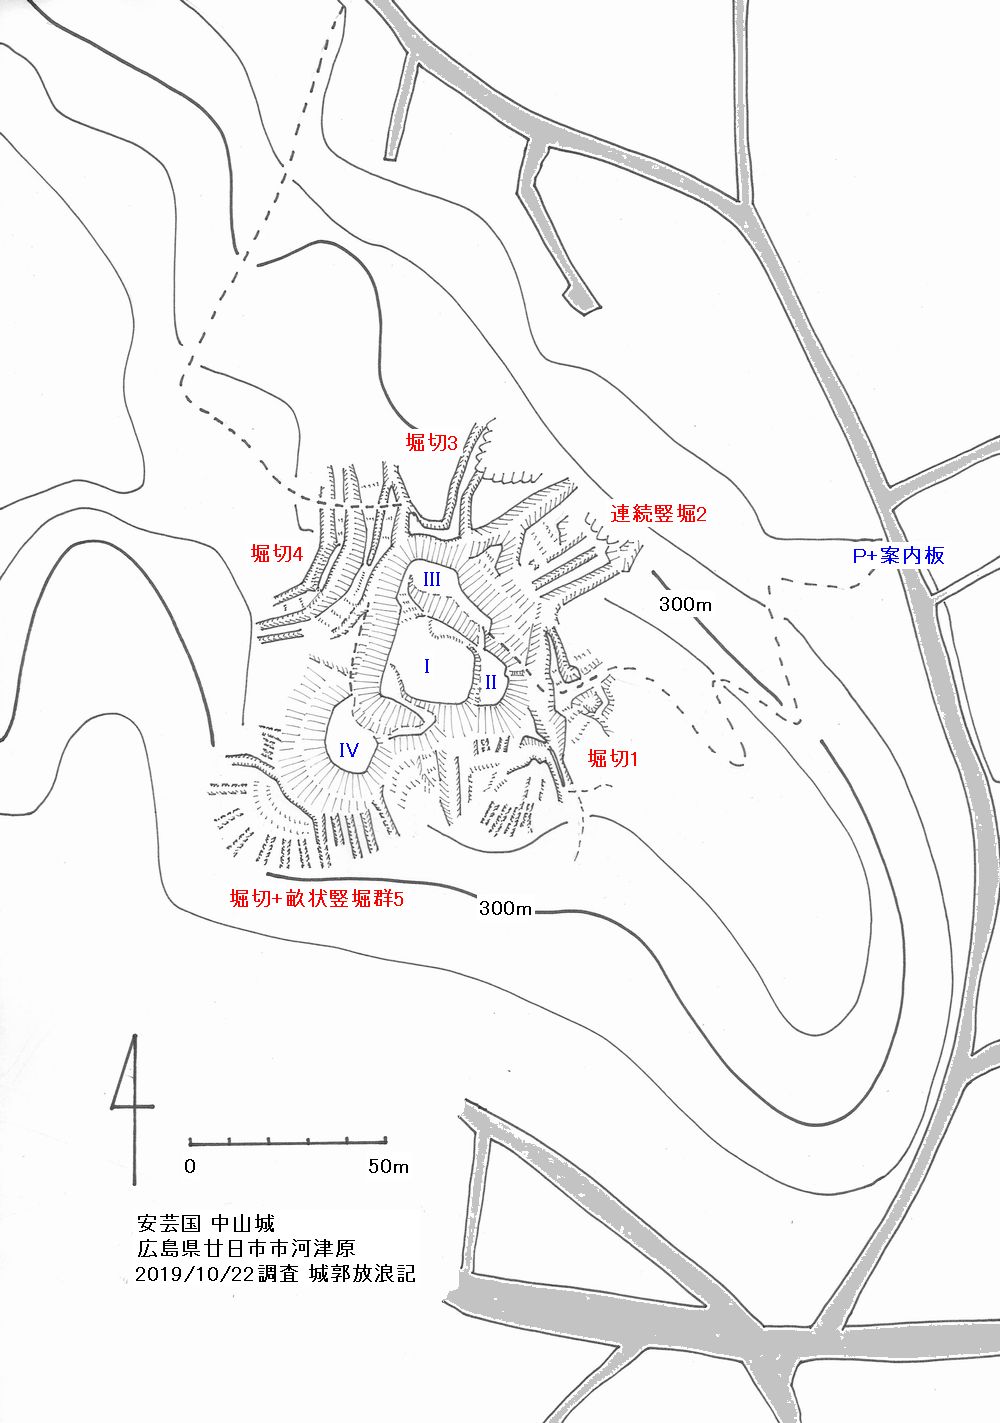 安芸 中山城(廿日市市)の縄張図